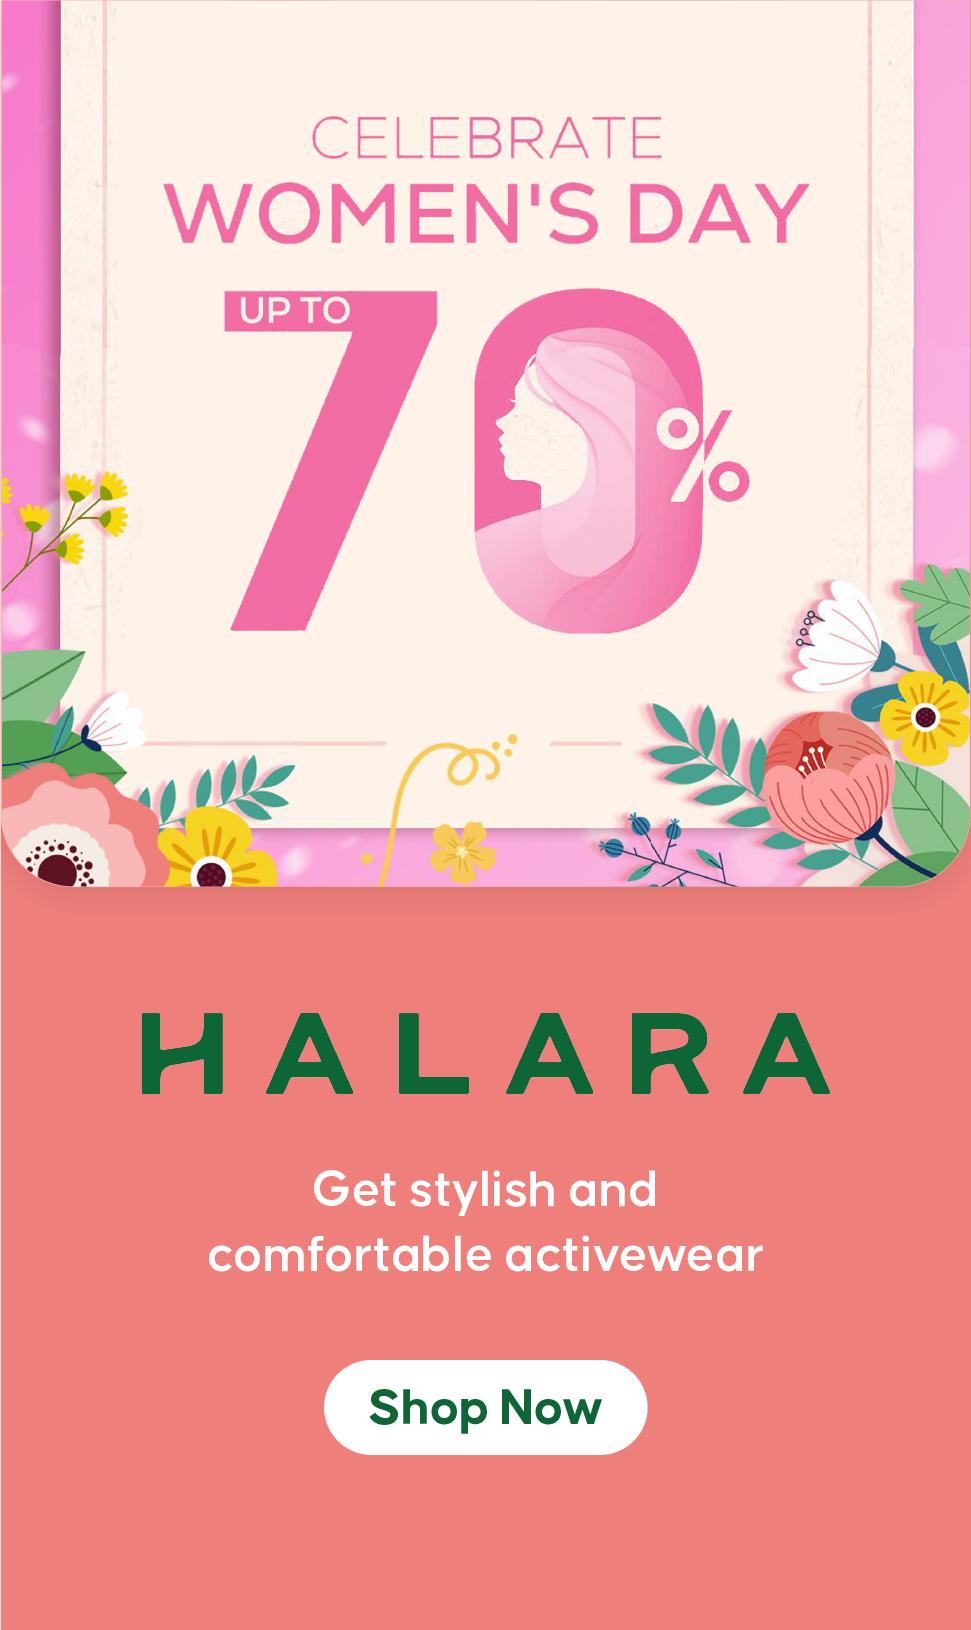 Halara women's day coupons 